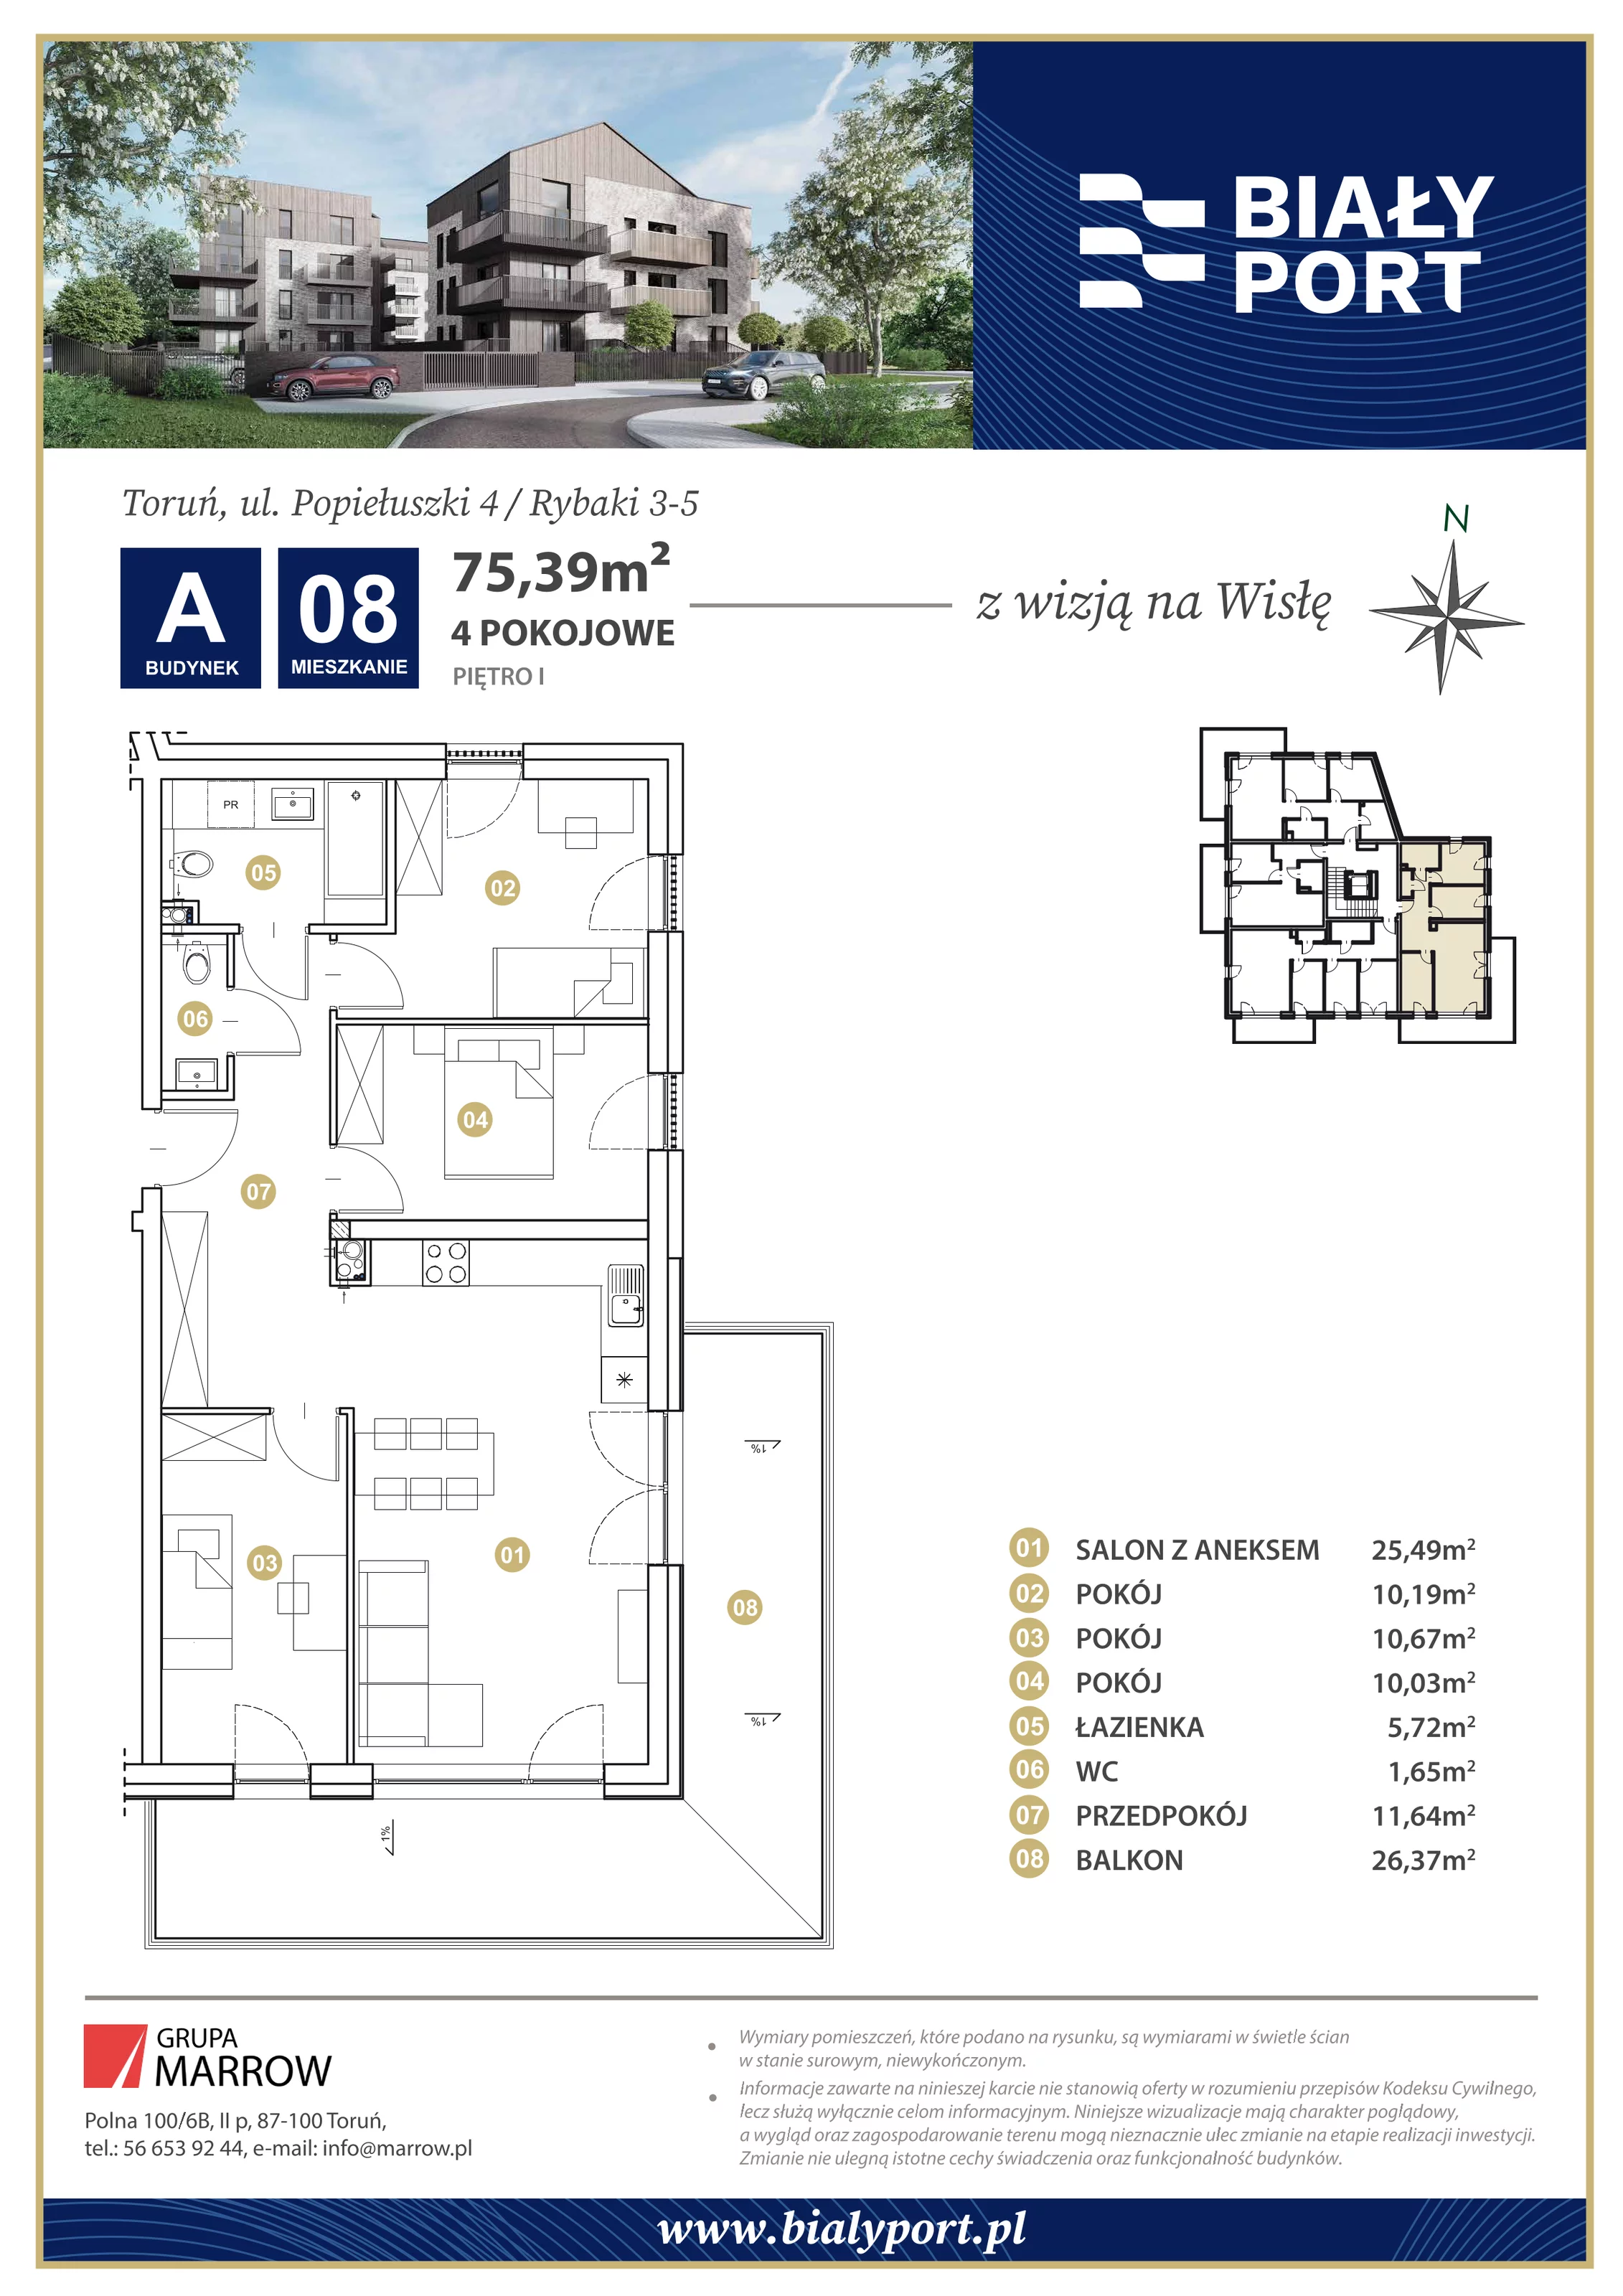 Mieszkanie 75,39 m², piętro 1, oferta nr 8, Biały Port, Toruń, Rybaki, ul. Popiełuszki 4